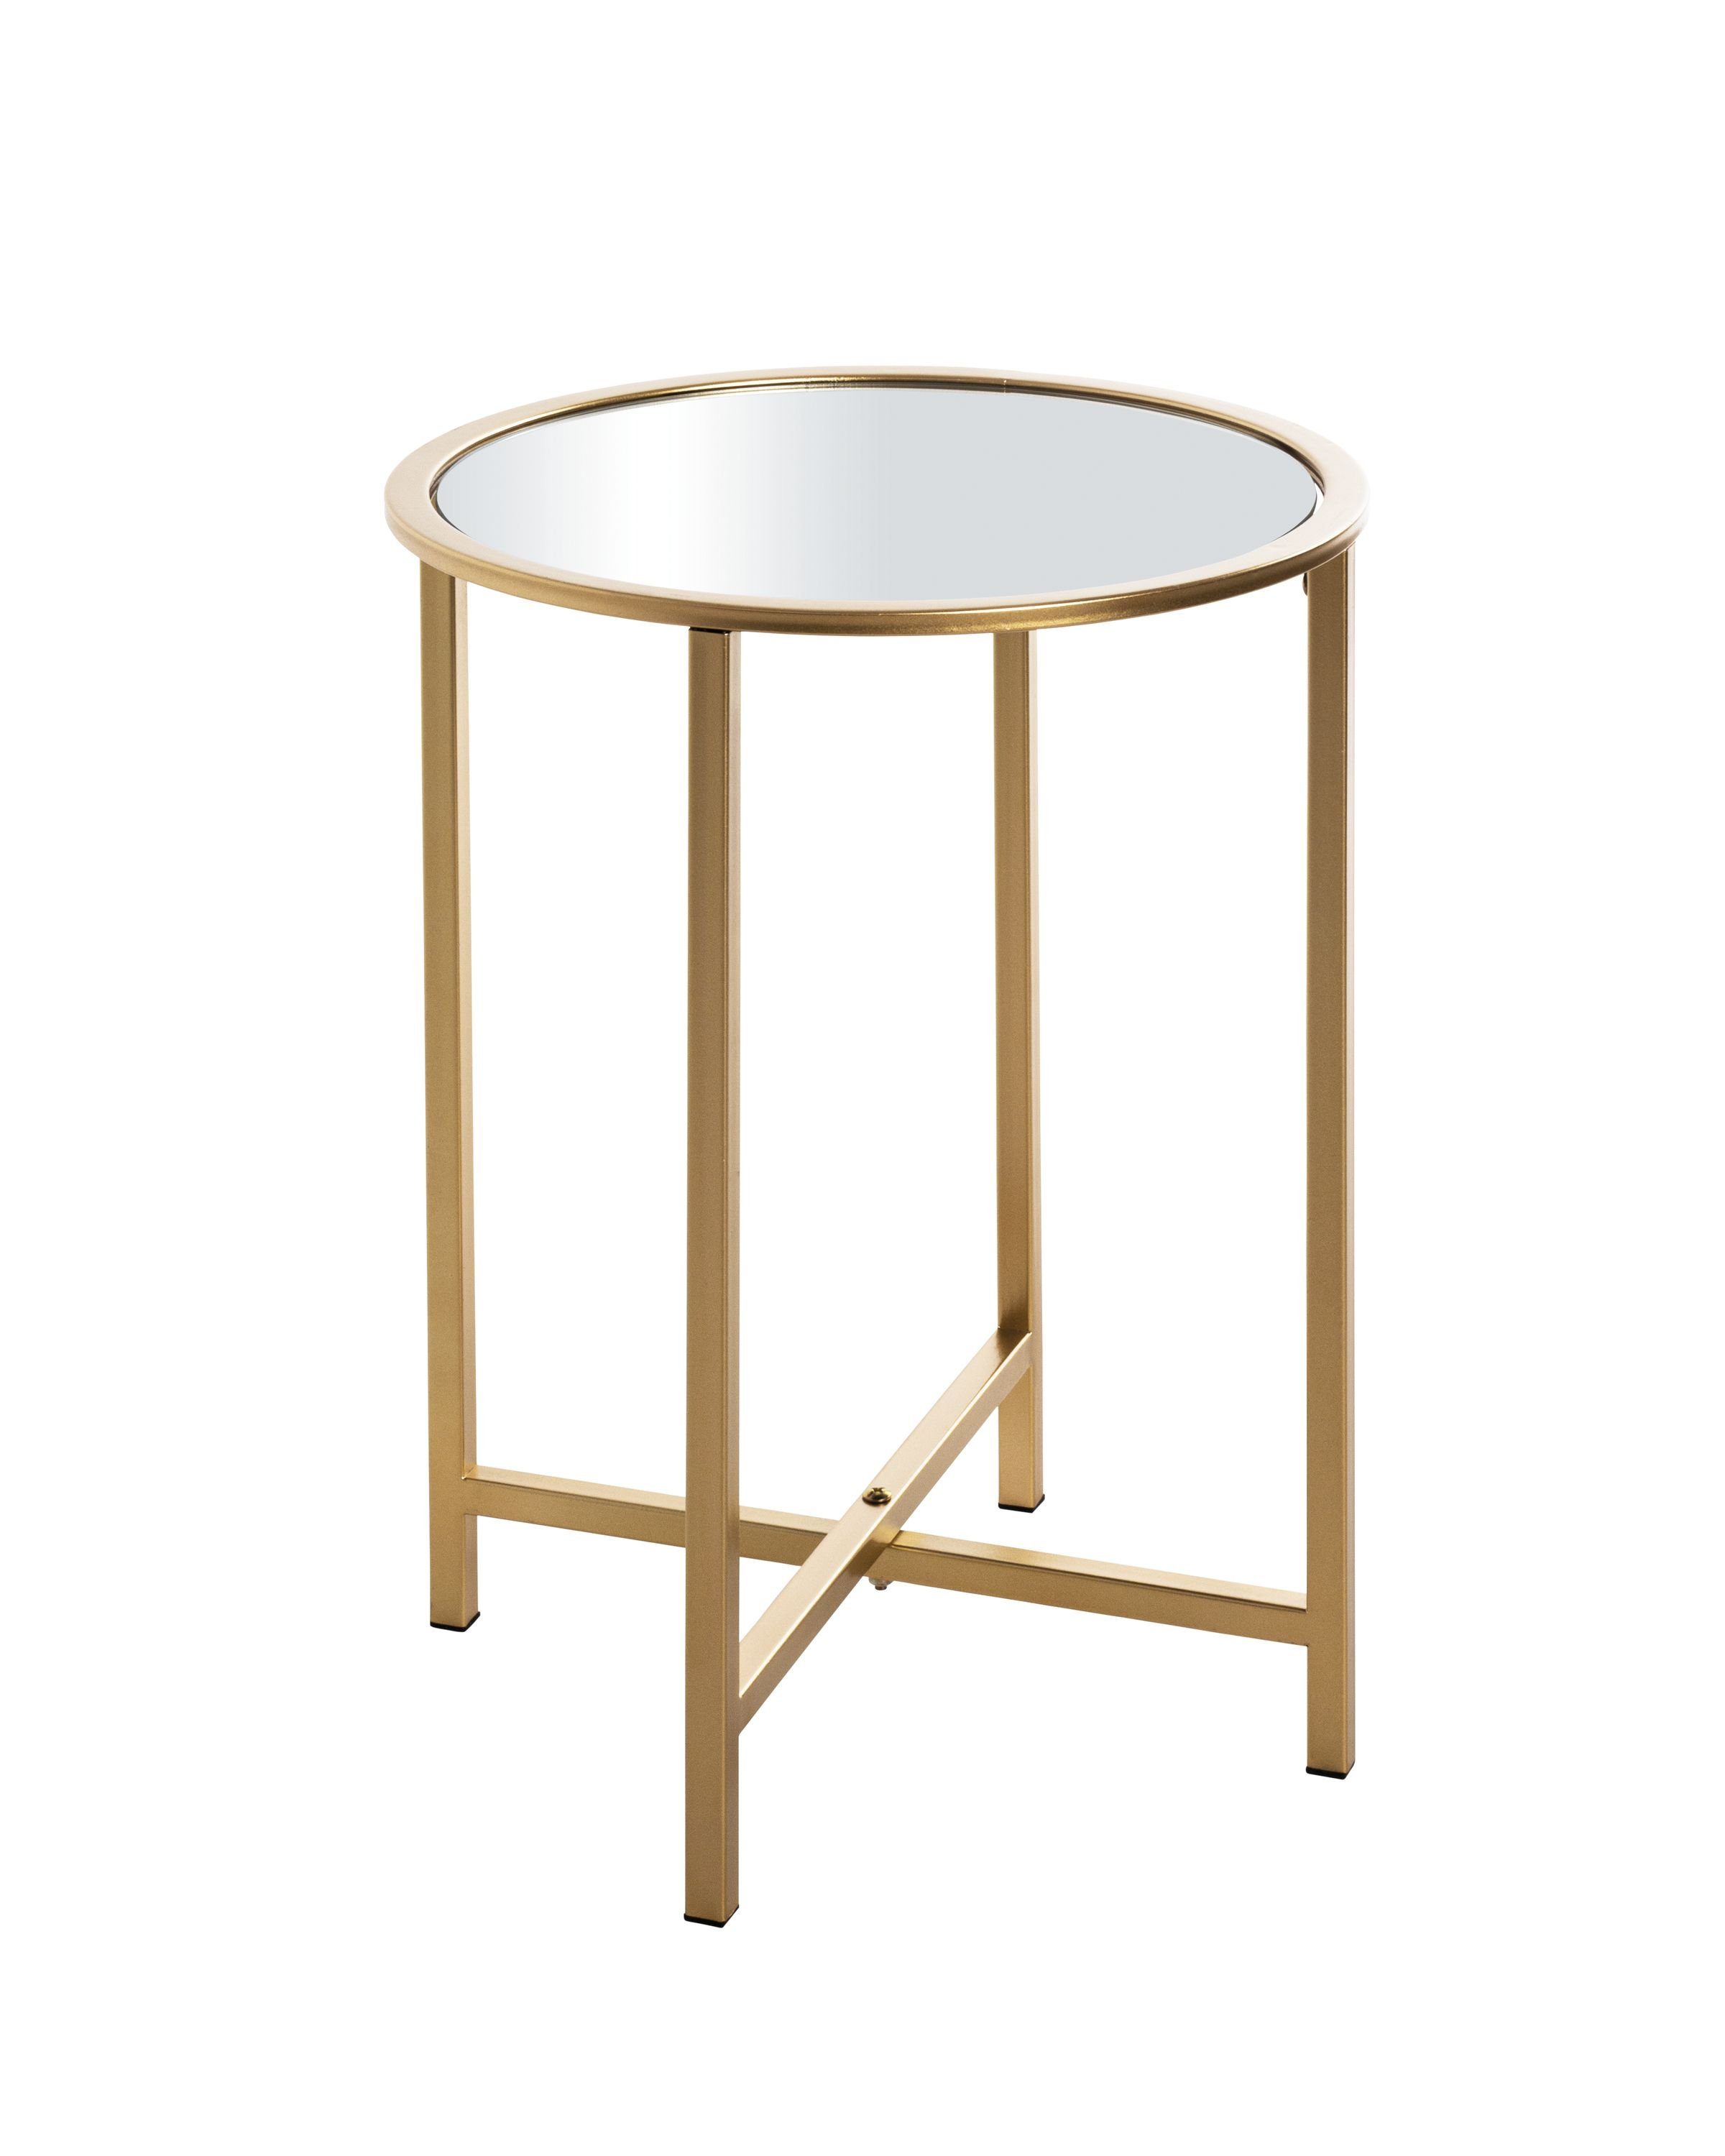 HAKU Beistelltisch Beistelltisch, HAKU Möbel Beistelltisch (DH 39x53 cm) DH 39x53 cm gold Kaffeetisch